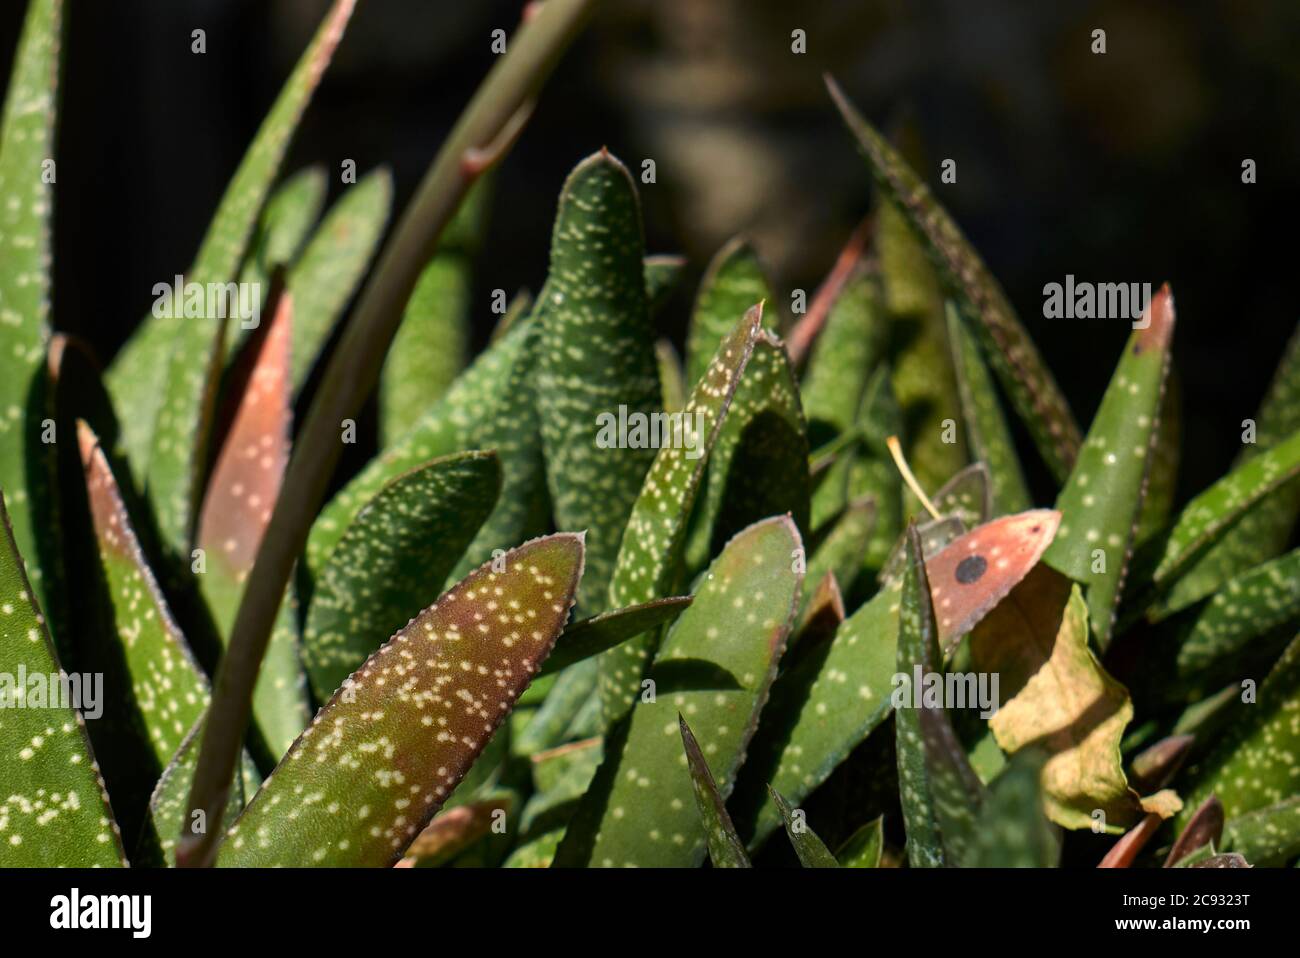 Gasteria carinata leaves close up Stock Photo